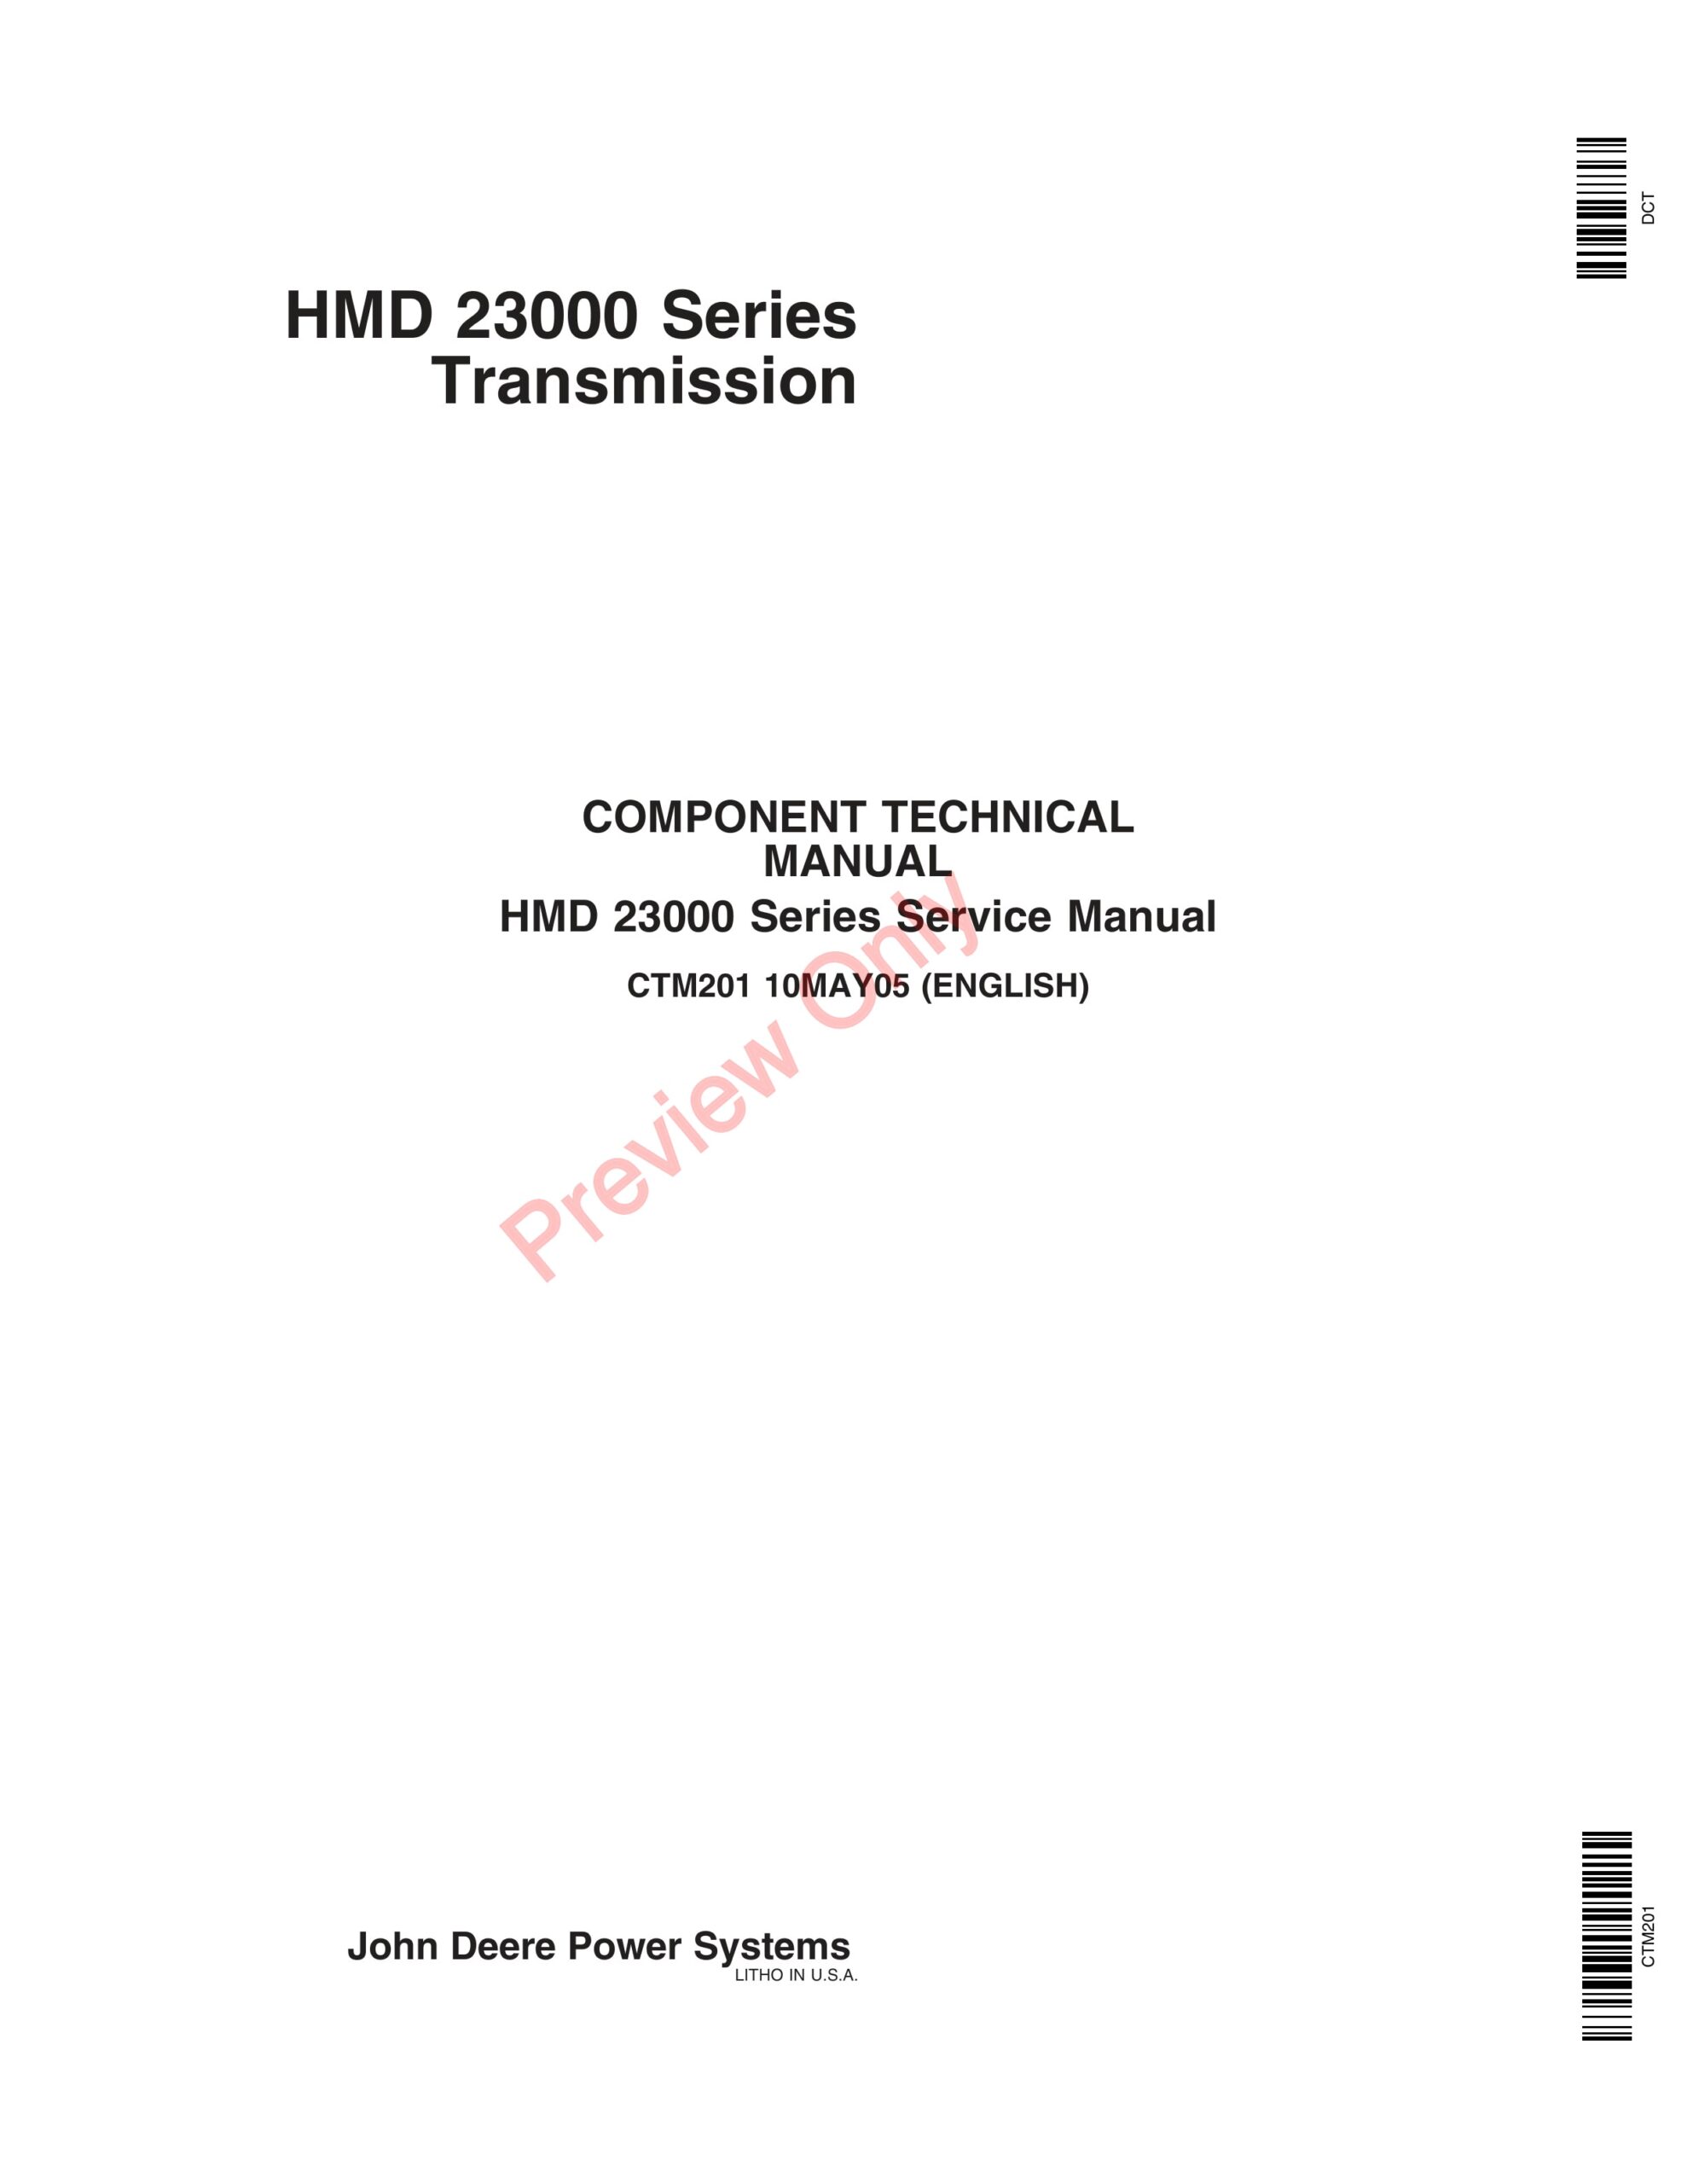 John Deere HMD 23000 Series Service Manual CTM201 10MAY05-1